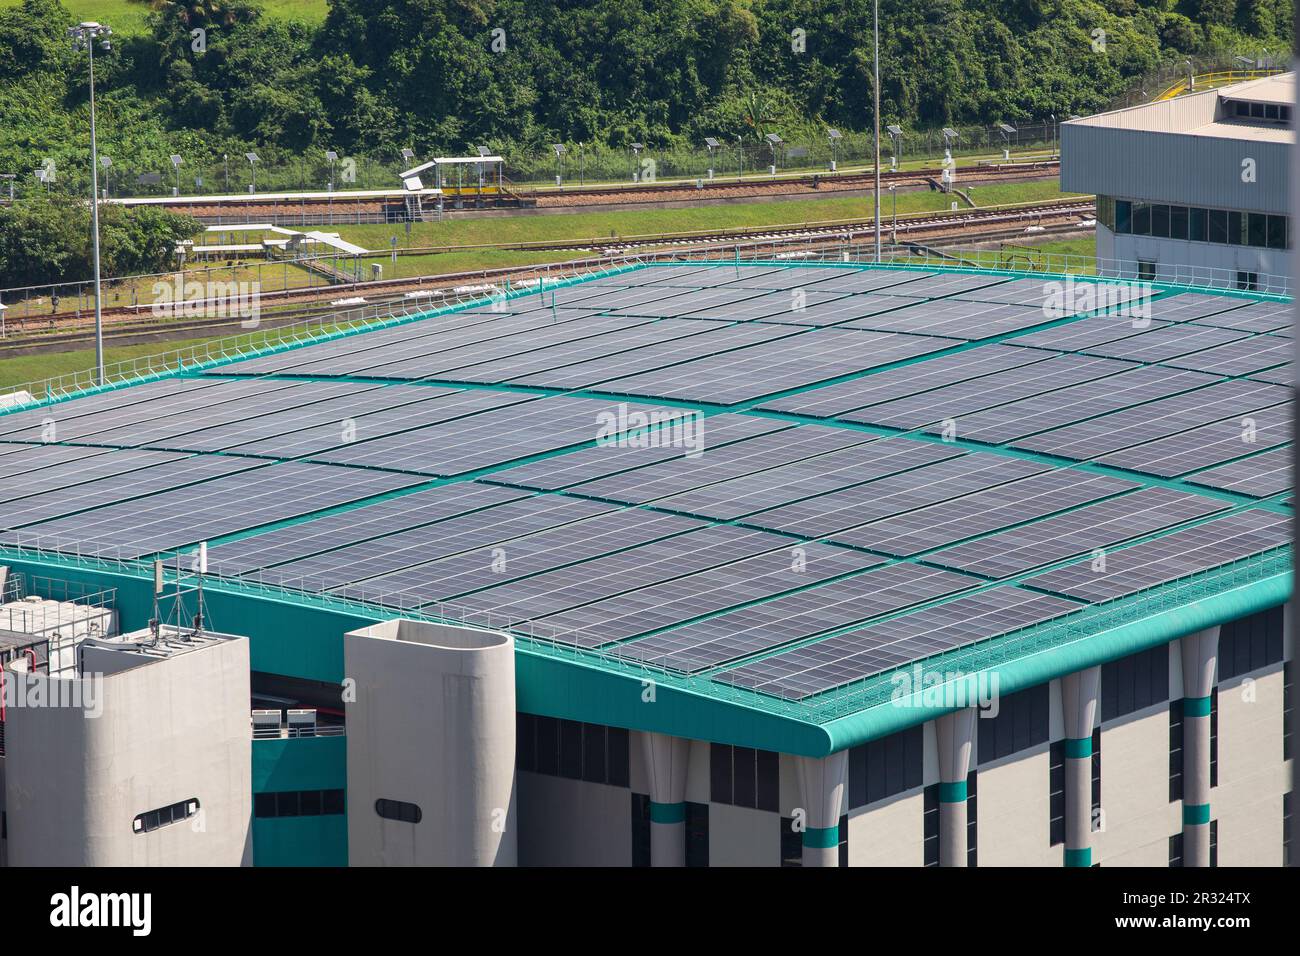 Sonnenkollektor auf einem Lagergebäude, um erneuerbare Energien für das Unternehmen zu nutzen und langfristig Kosten zu sparen. Singapur Stockfoto